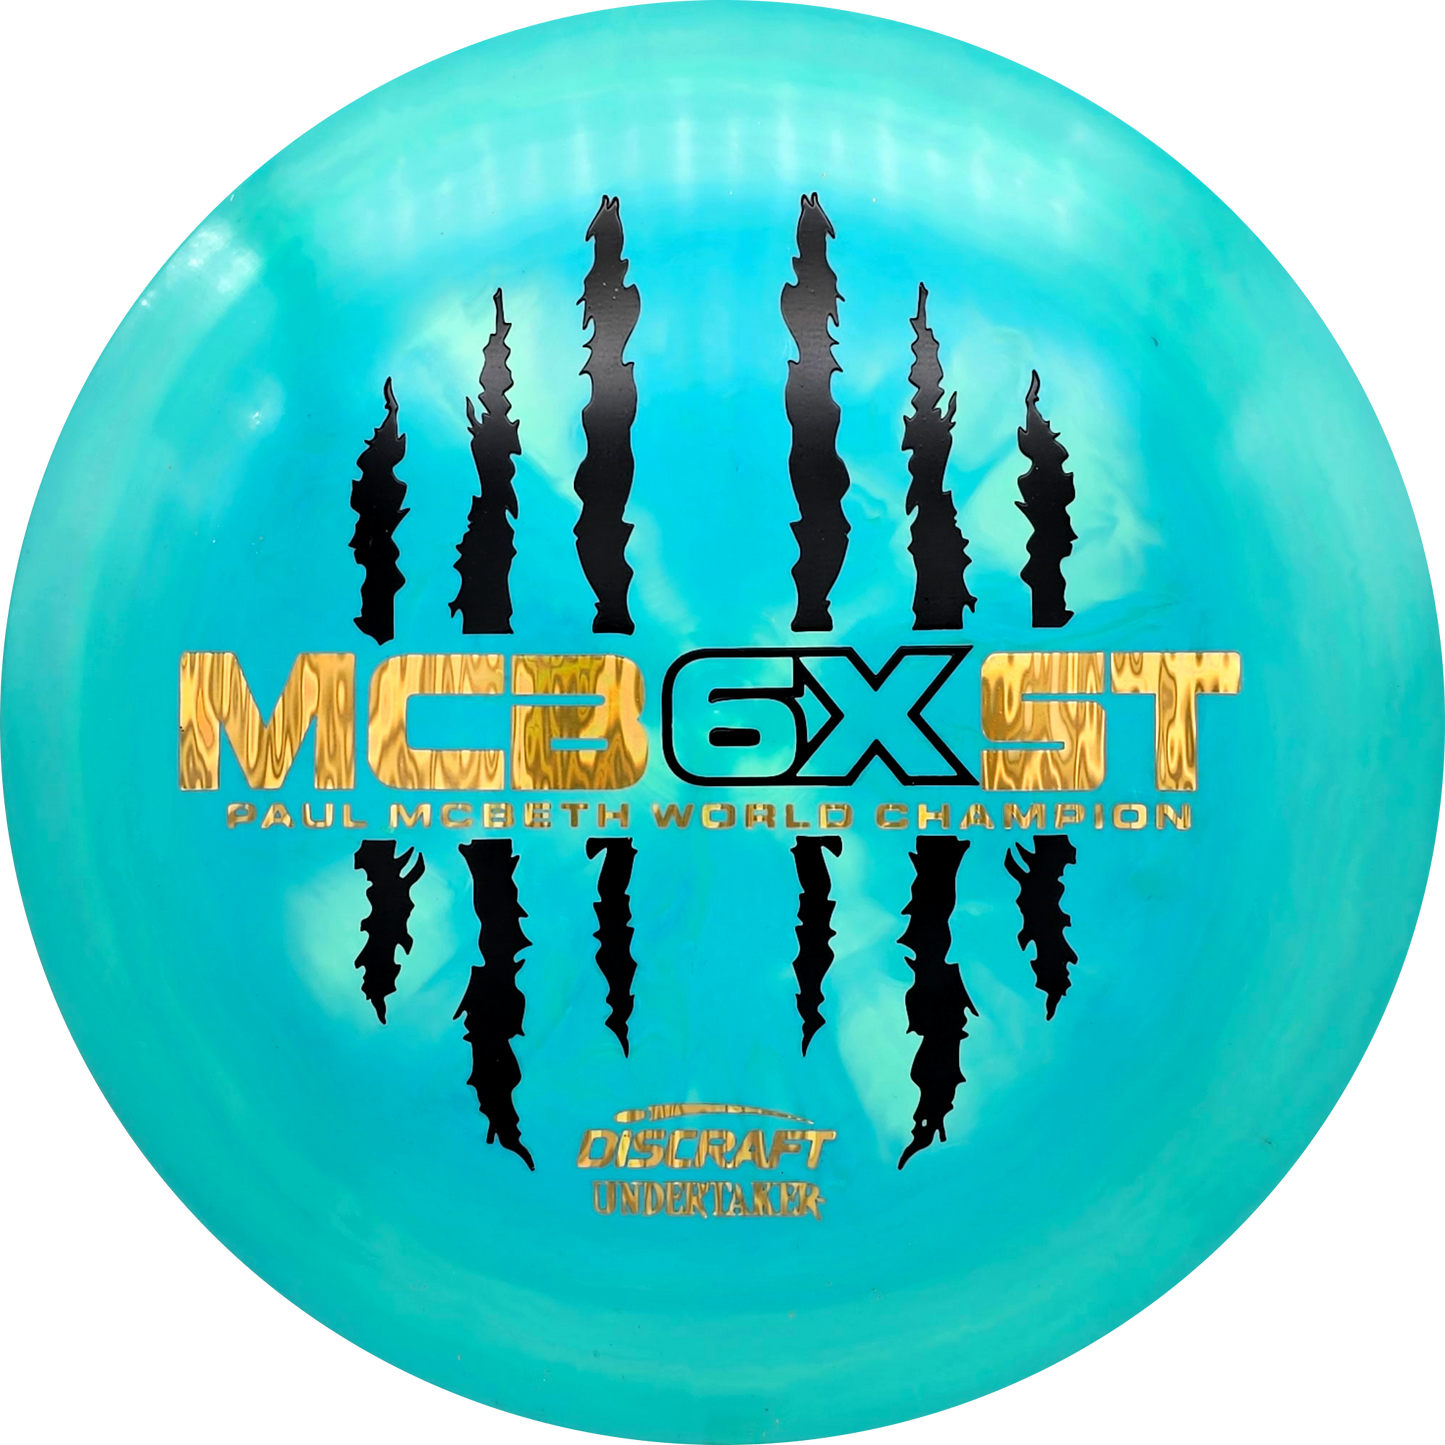 Paul McBeth 6X Claw ESP - Undertaker